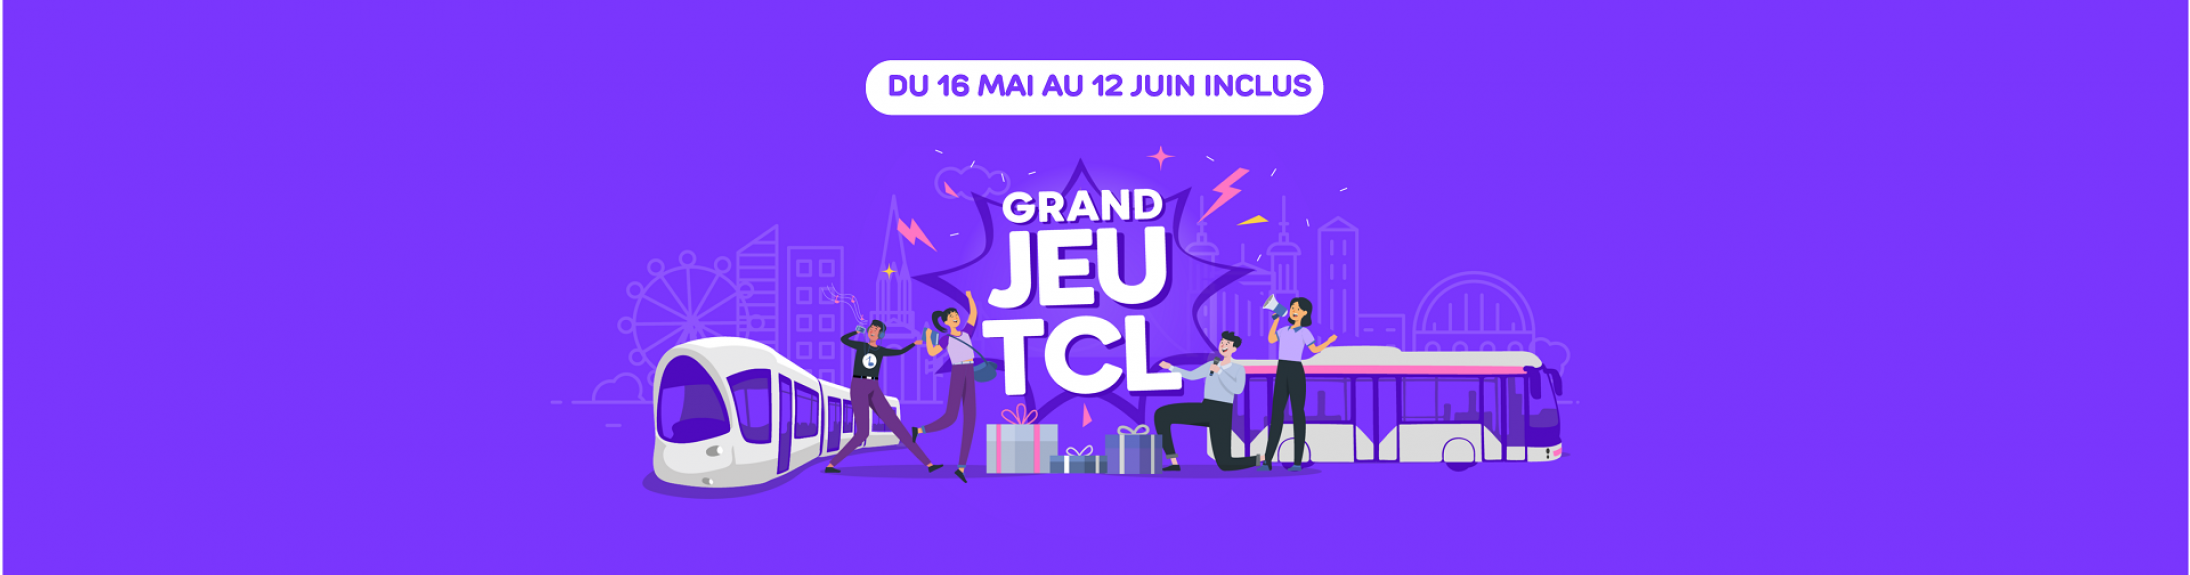 Grand Jeu Mon TCL